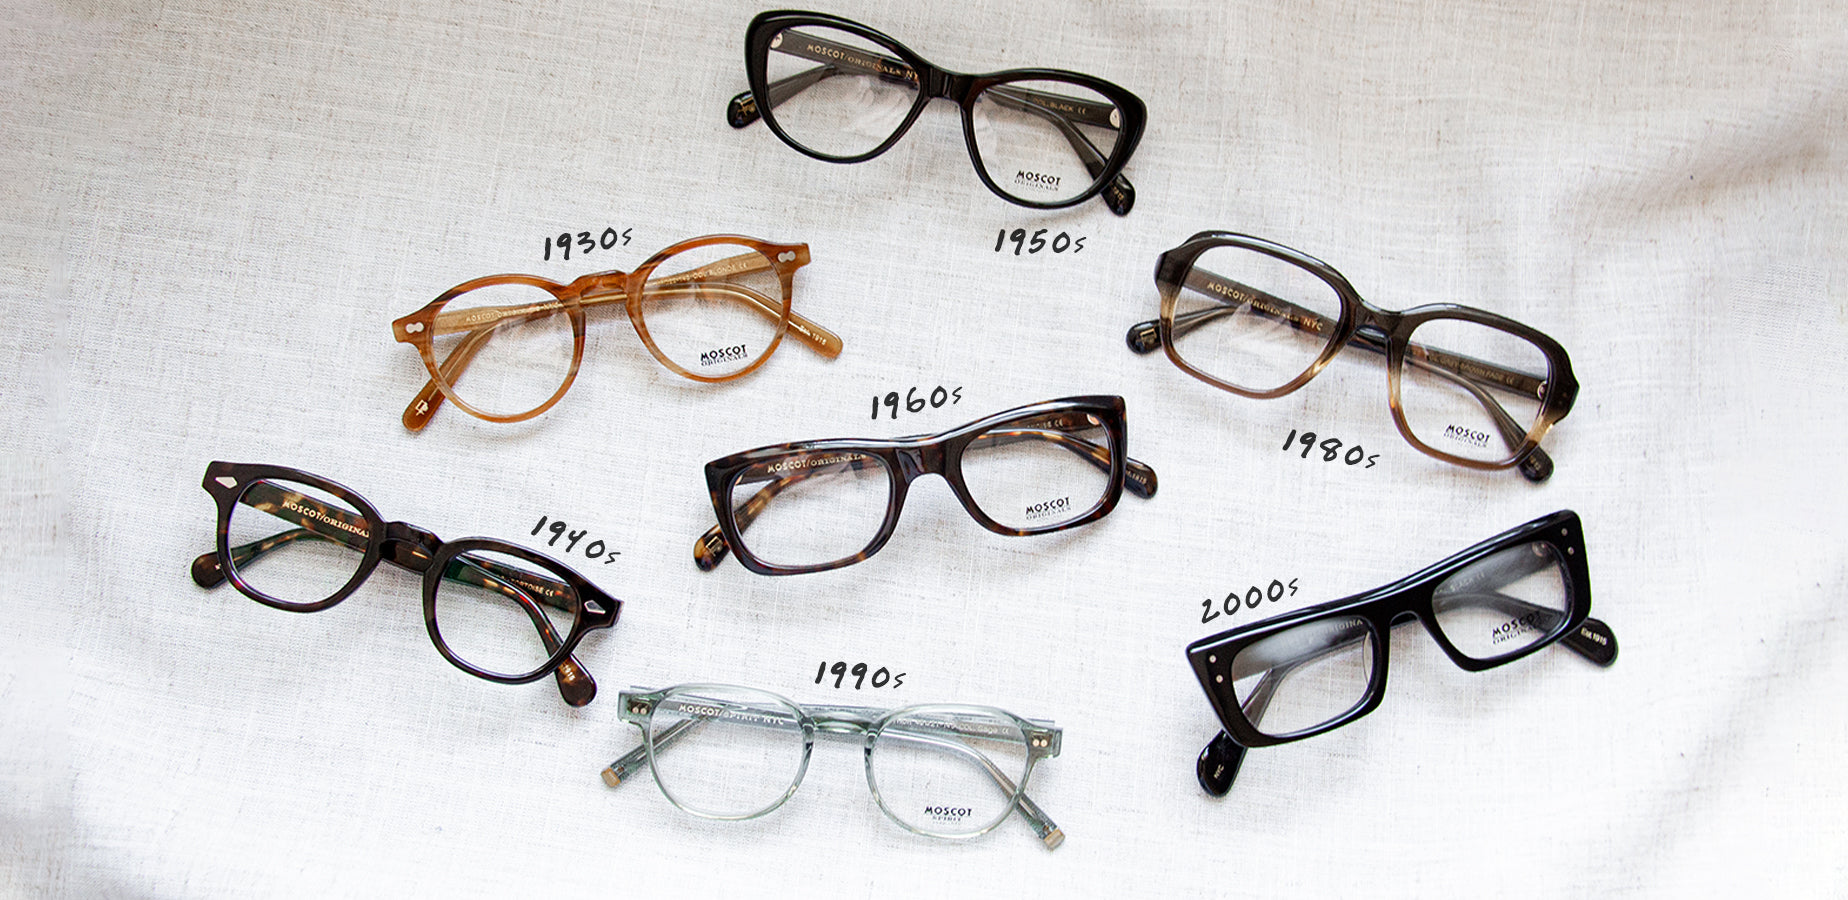 100+ Years of Eyewear — Frames Through the Decades